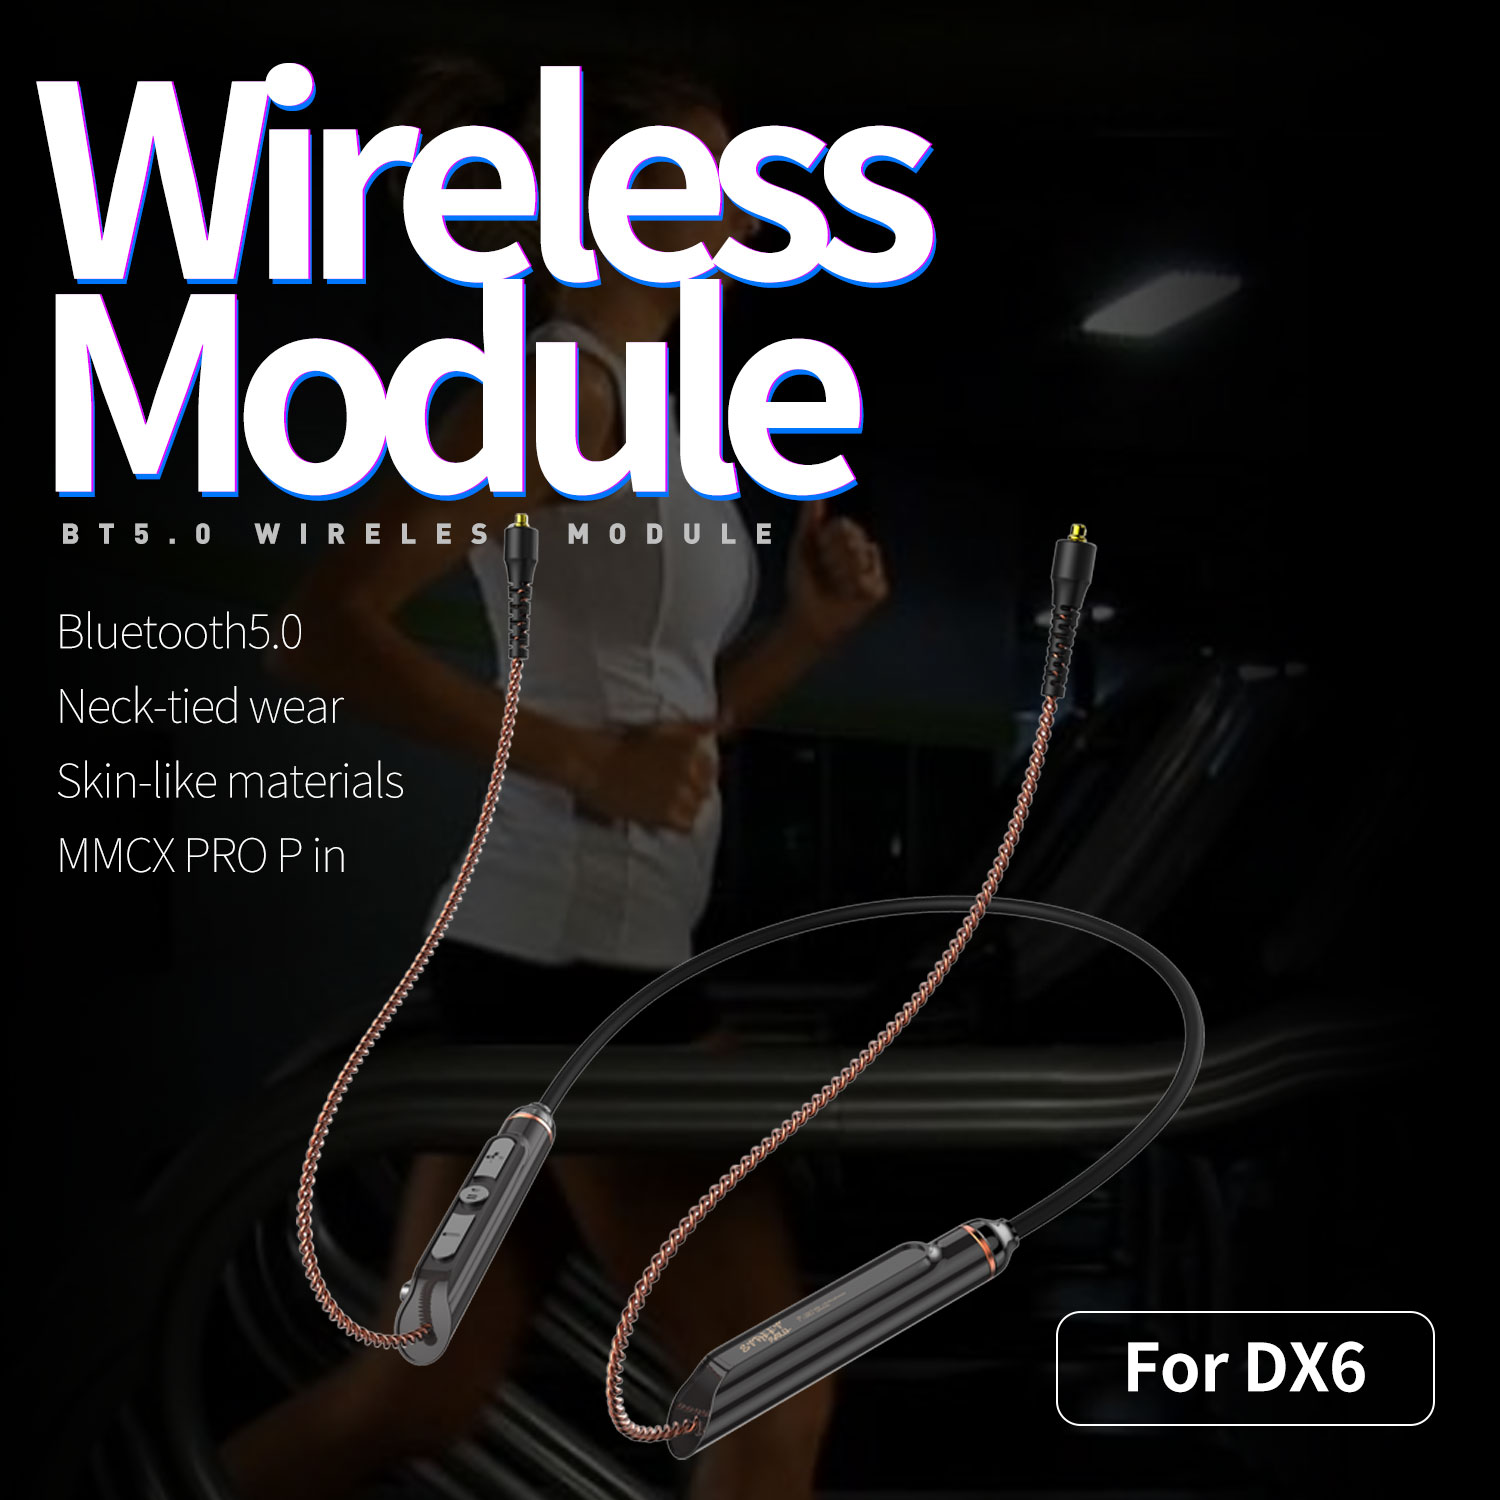 Module Bluetooth 5.0 Plextone chuyển đổi tai nghe DX6 không dây thành có dây pin 115mAh nghe nhạc liên tục 8h, thiết kế đeo cổ, có mic và phím Media chuyên dùng chạy bộ. - Hàng Chính Hãng..